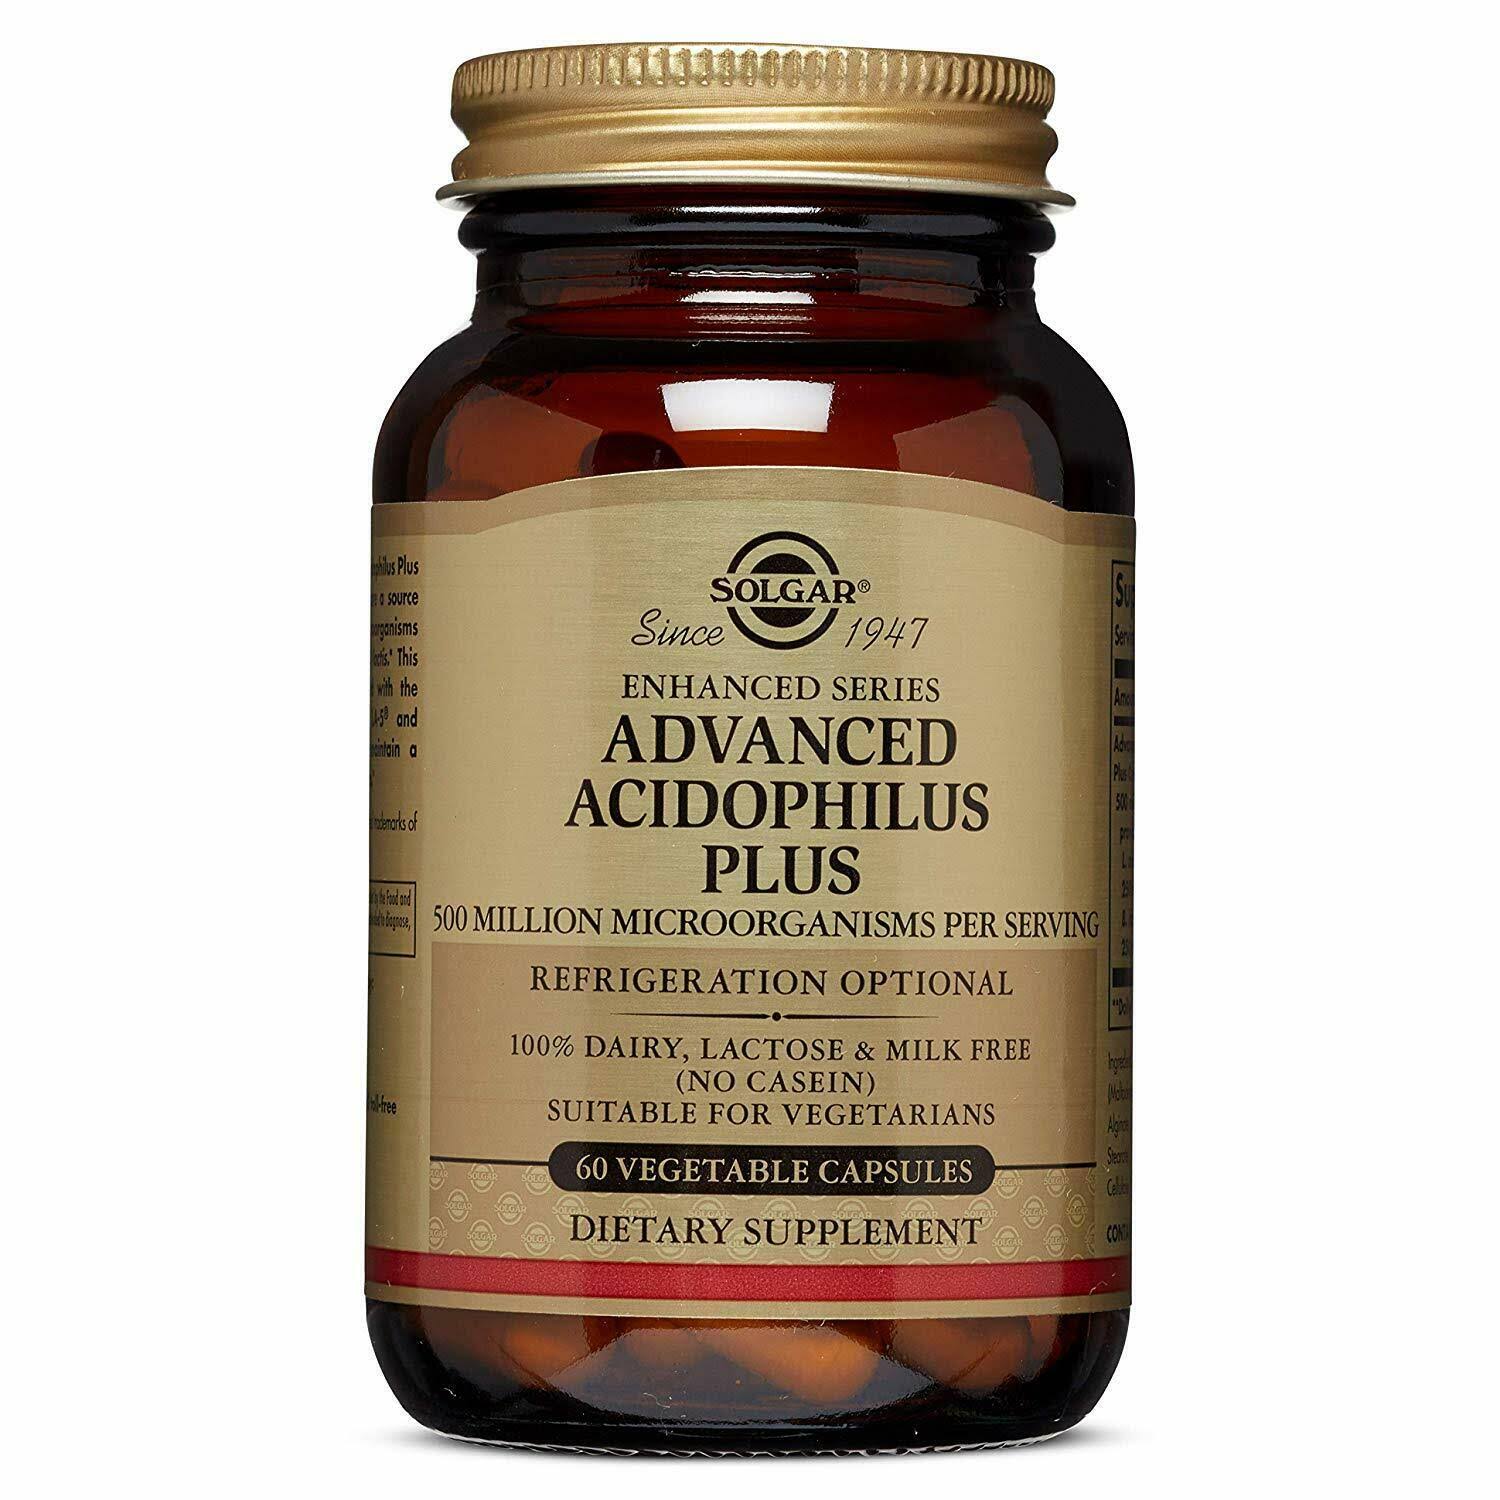 Solgar Advanced Acidophilus Plus Dietary Supplement - 60 Capsules